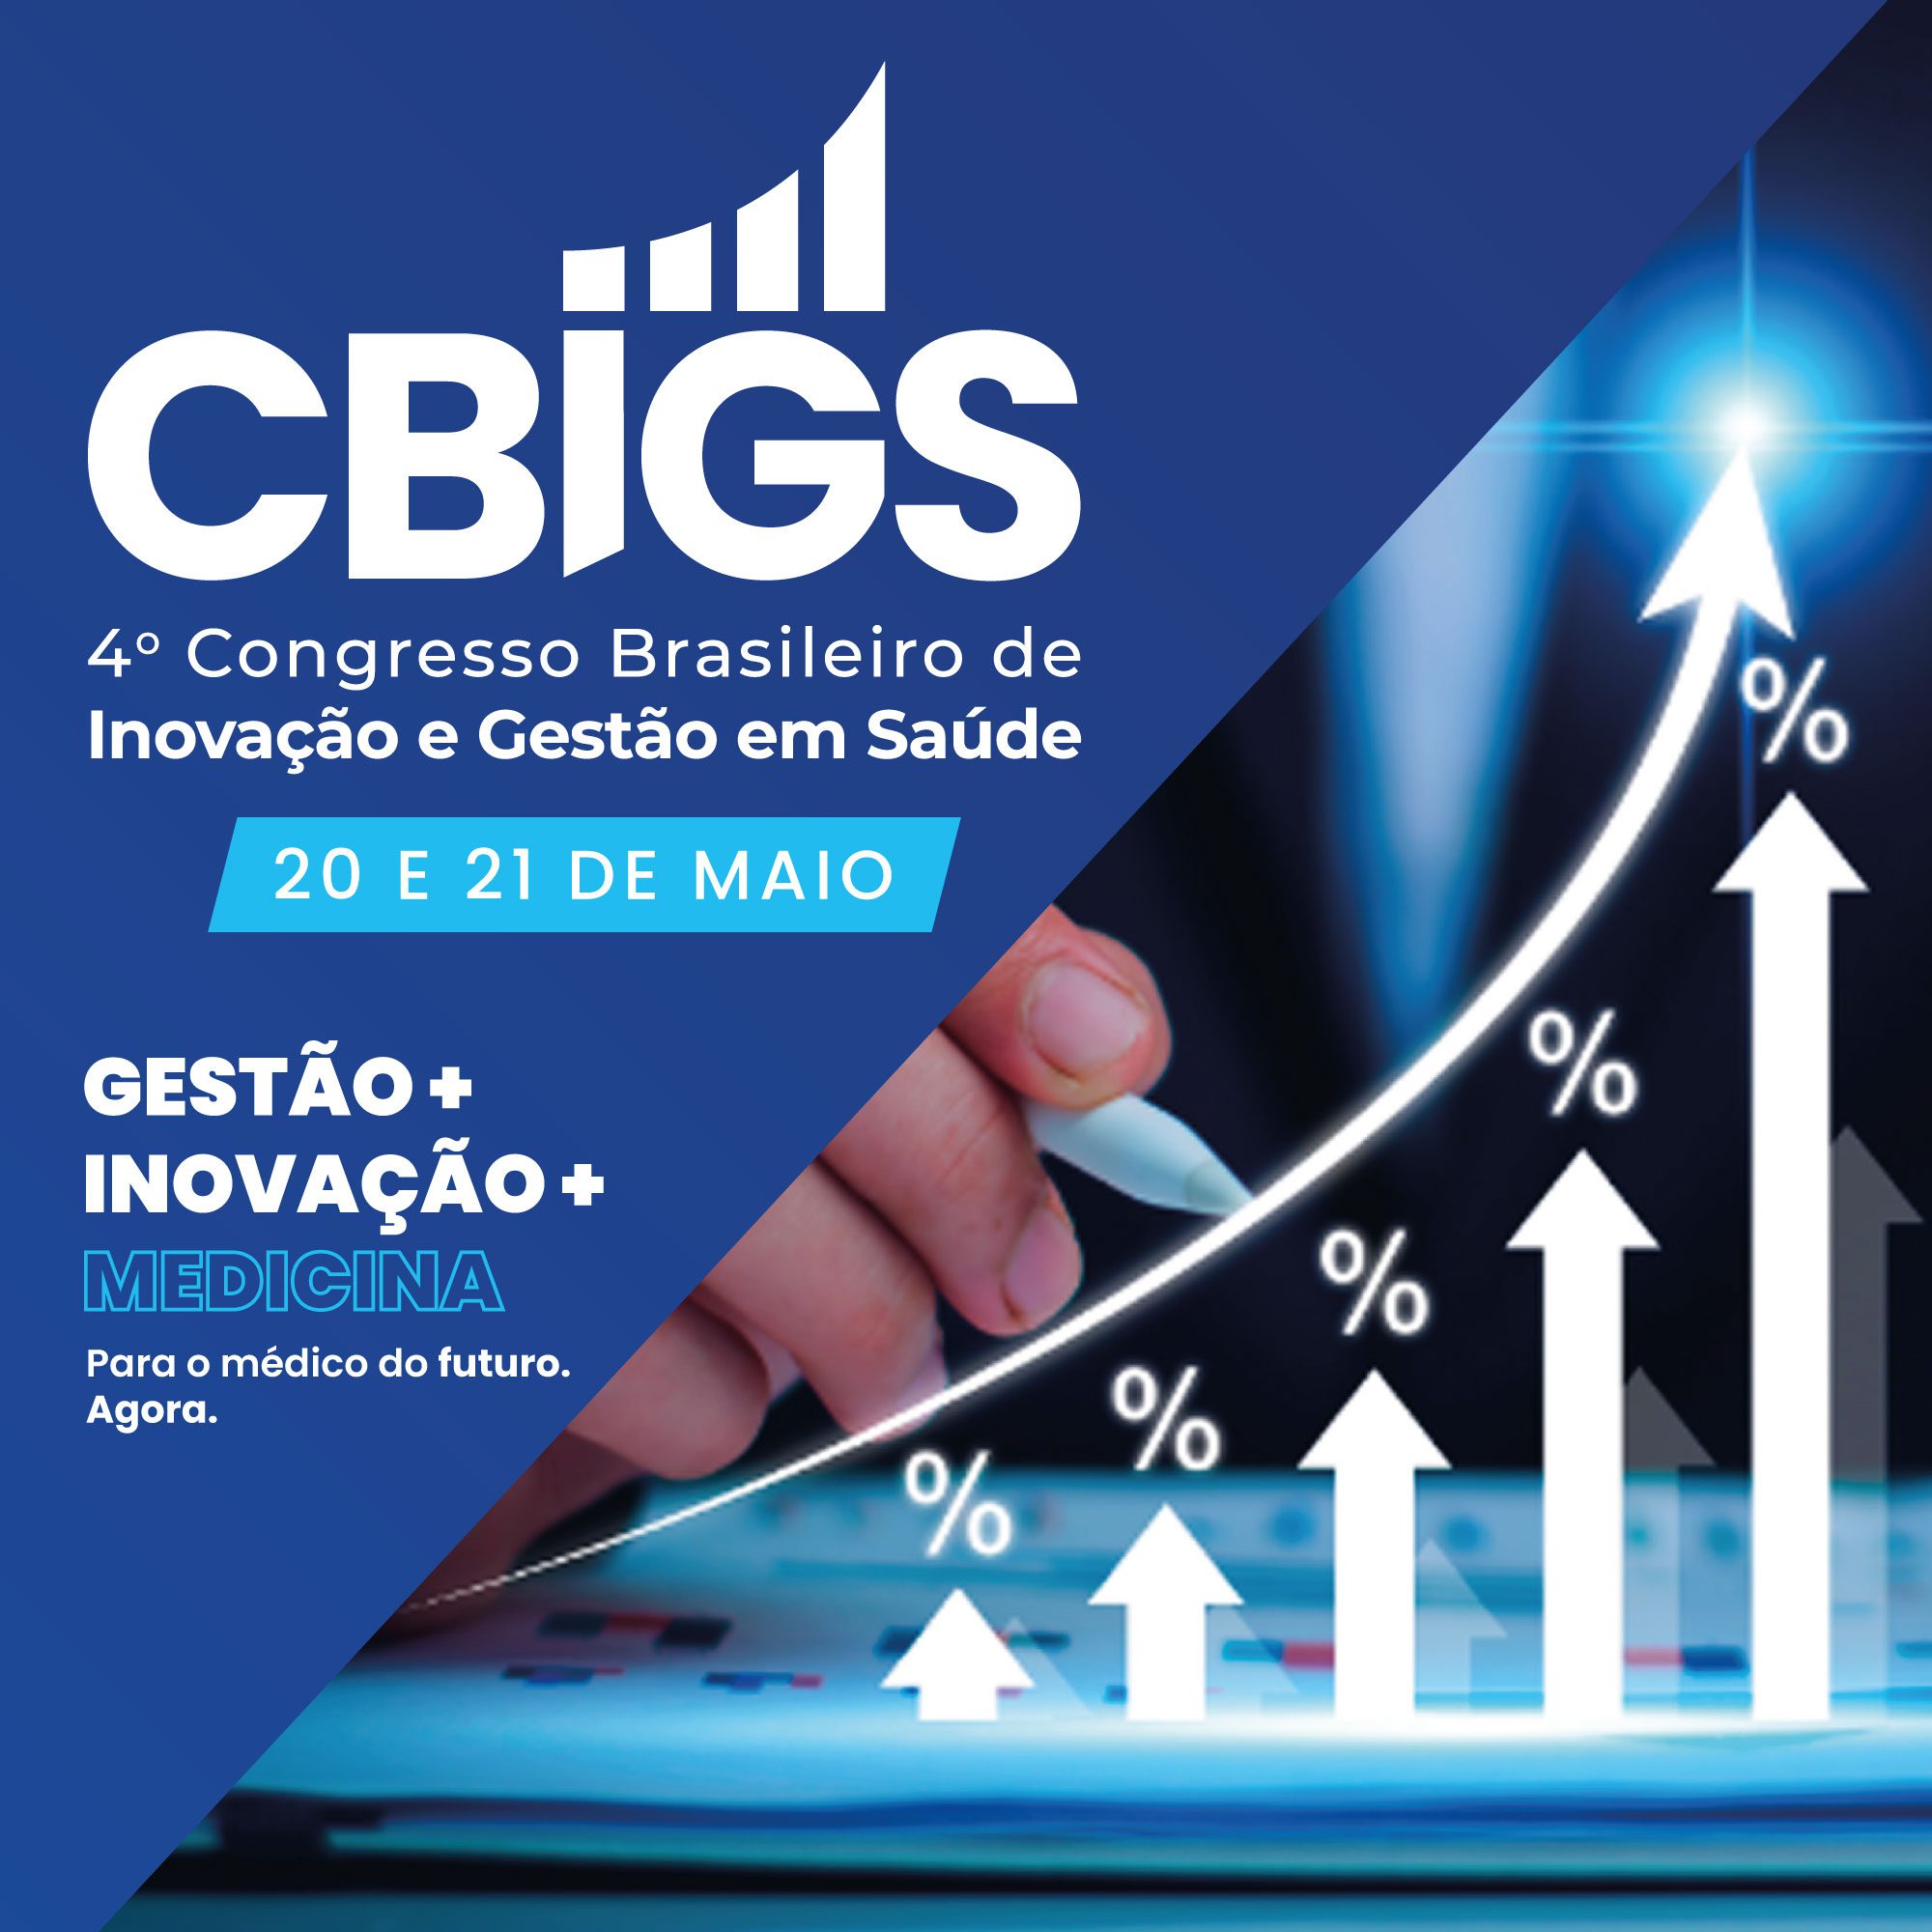 4 º Congresso Brasileiro de Inovação e Gestão em Saúde - CBIGS